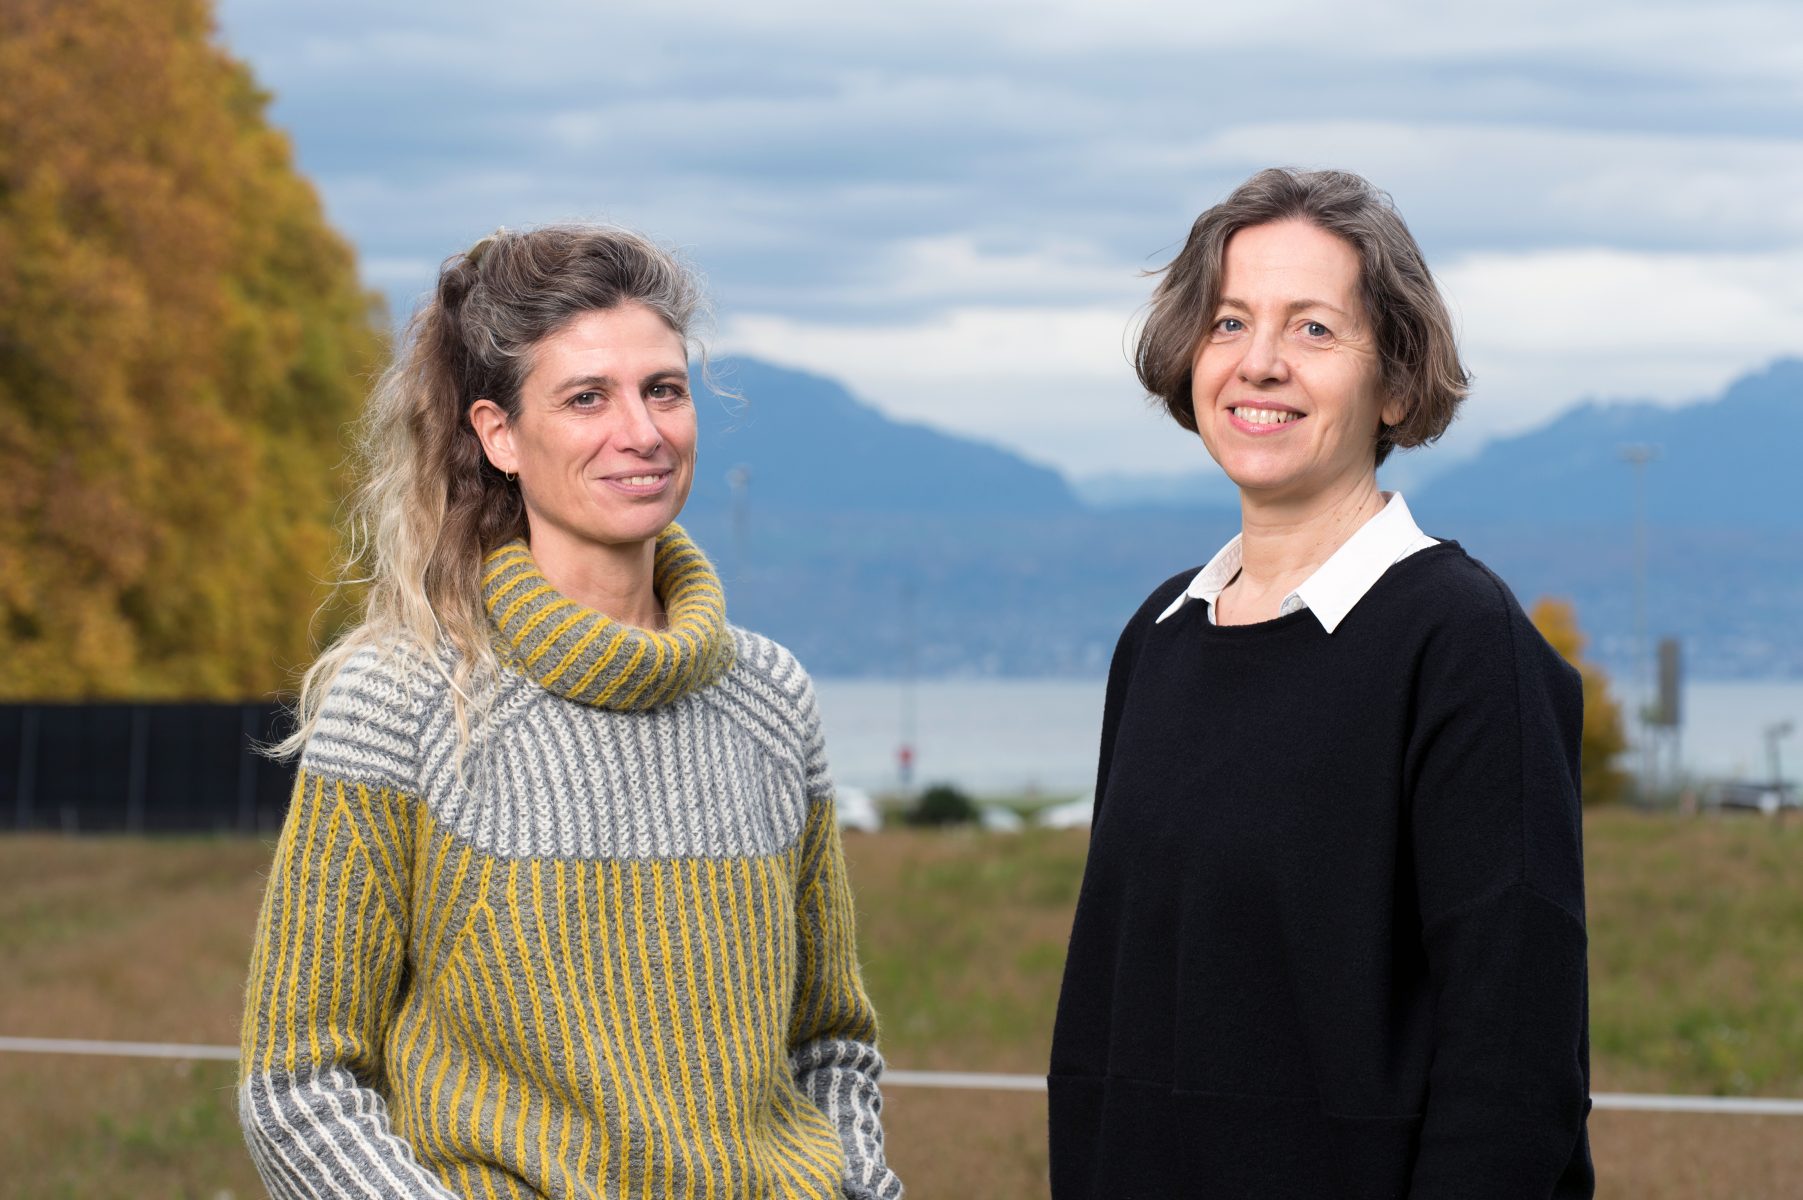 Martine Schaer (à gauche) et Verity Elston (à droite) oeuvrent toutes deux au sein du Graduate Campus pour le développement professionnel des scientifiques de l'UNIL. © Félix Imhof / UNIL